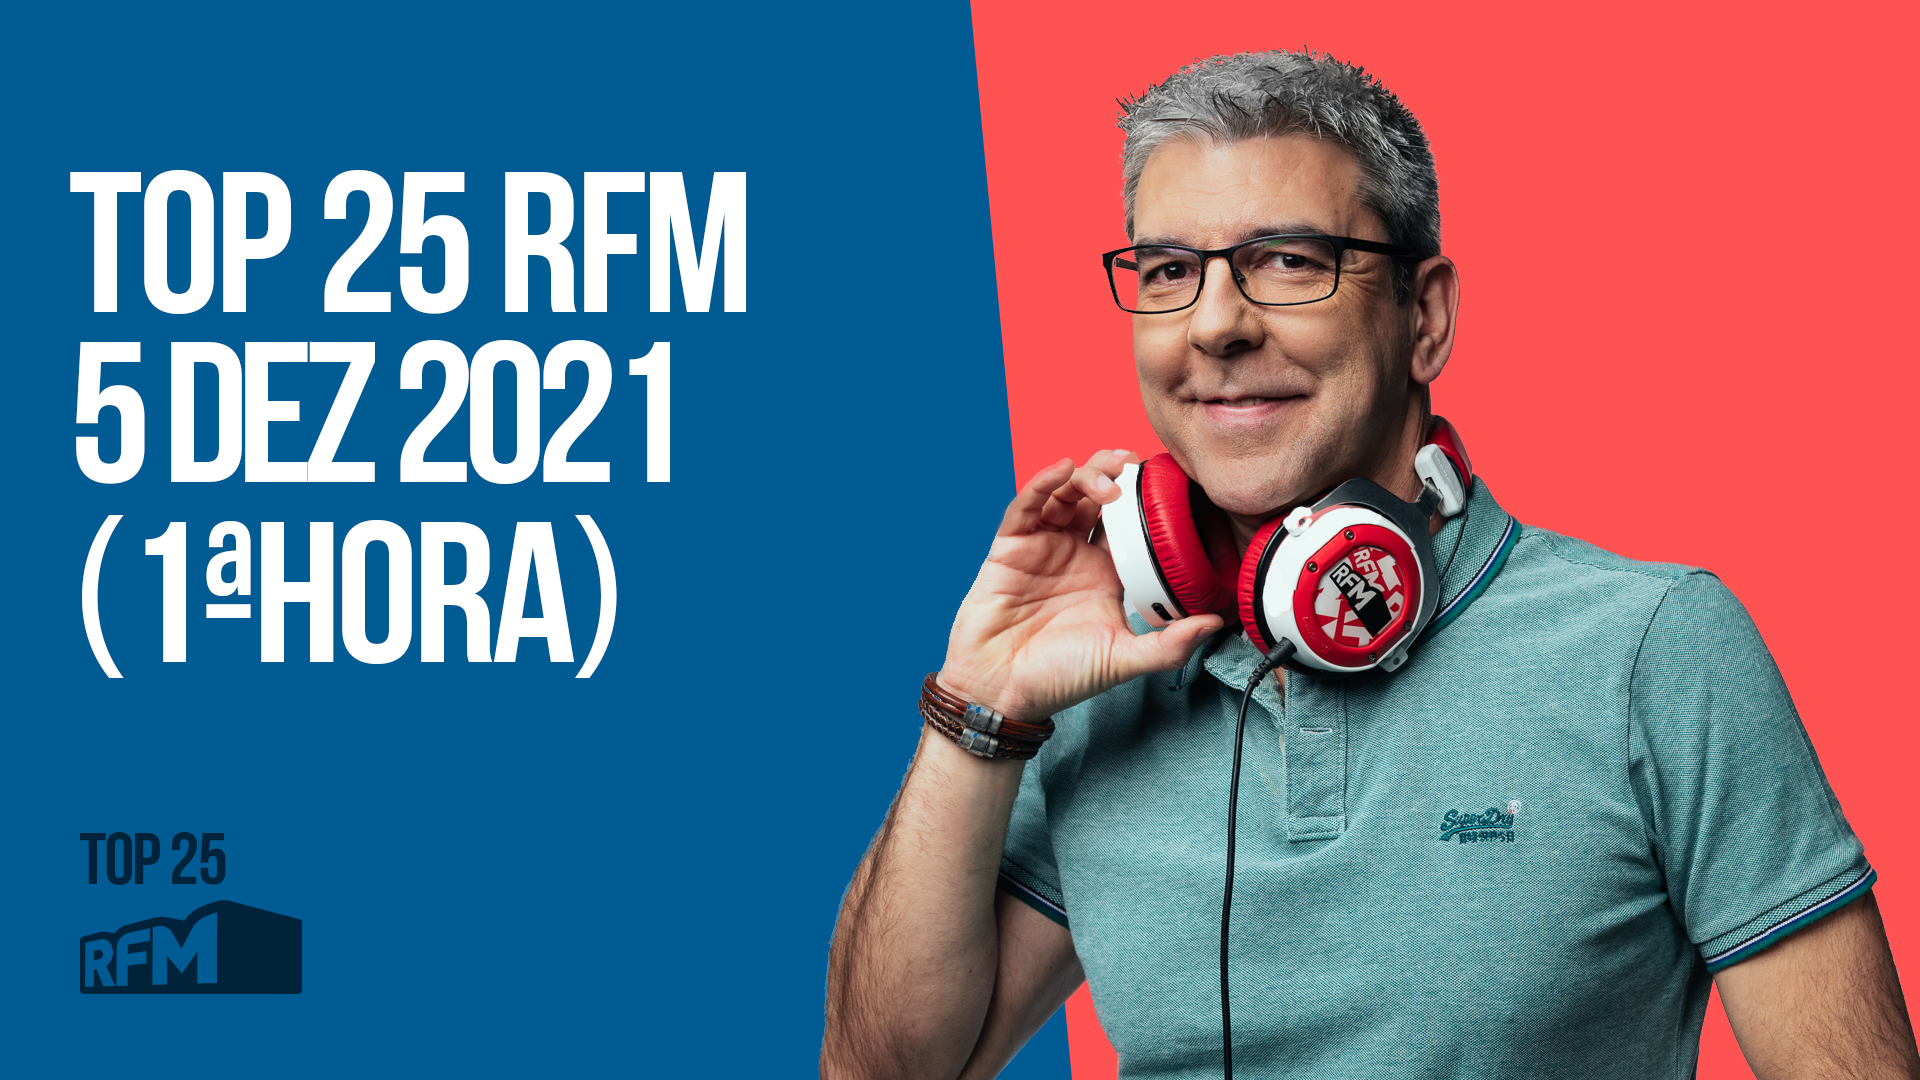 TOP 25 RFM 05 DEZEMBRO DE 2021 - 1ª HORA